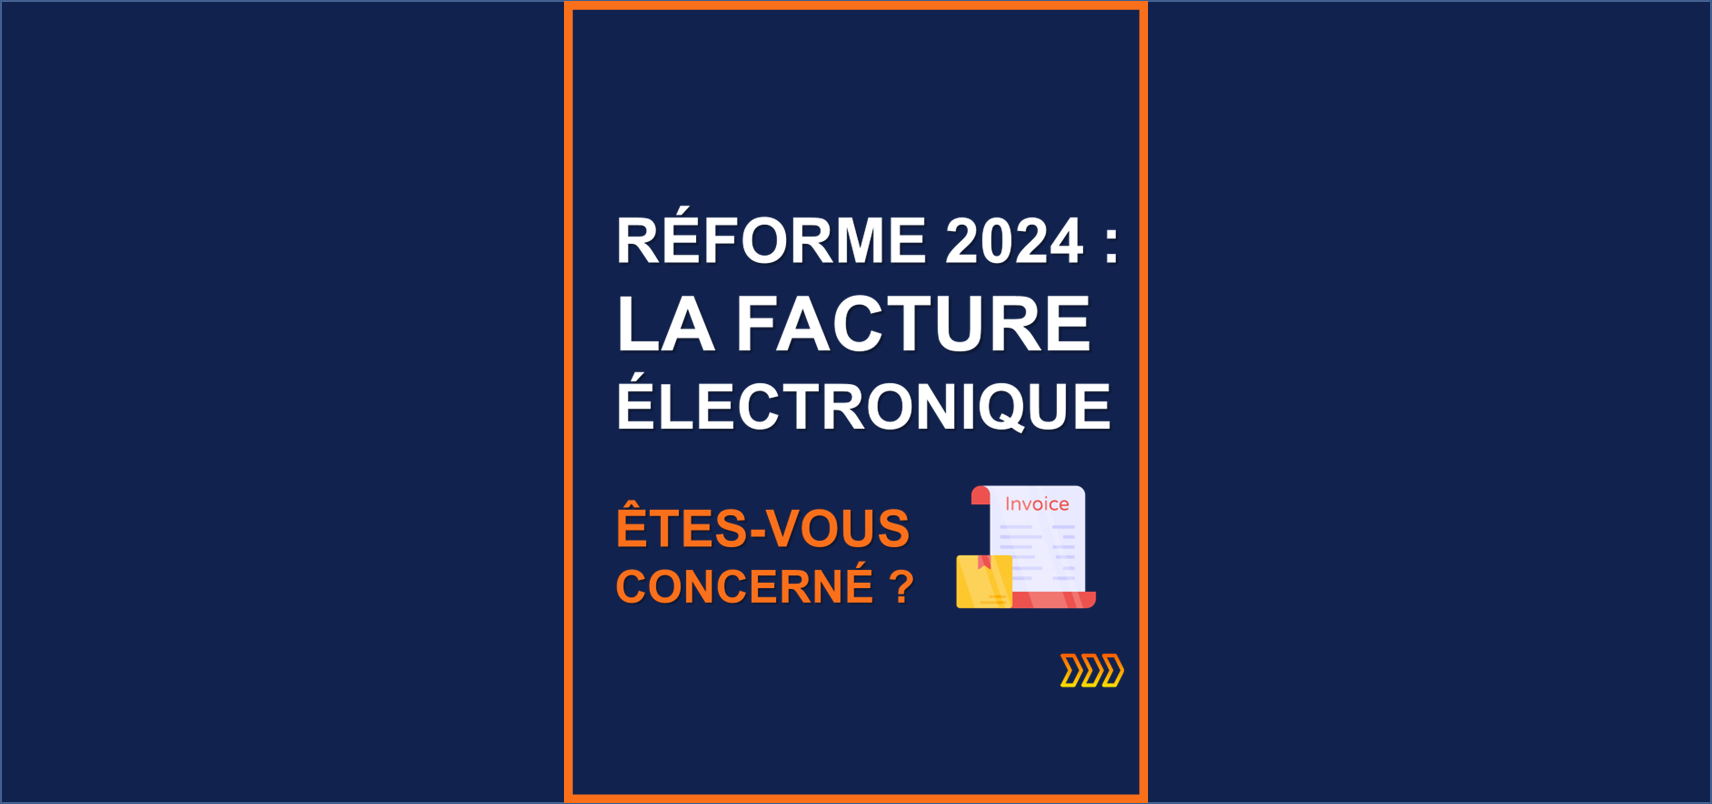 Réforme 2024 - Facture électronique